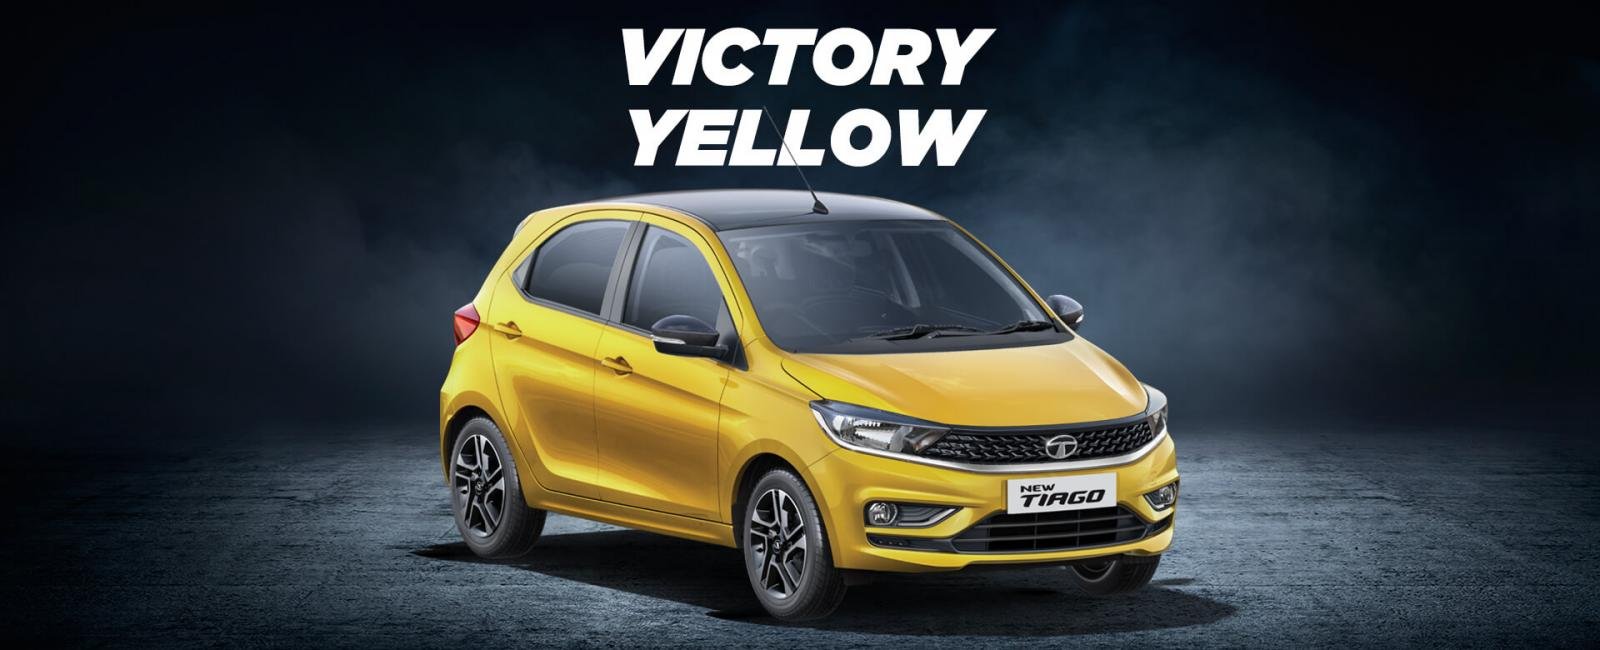 2020 Tata Tiago yellow